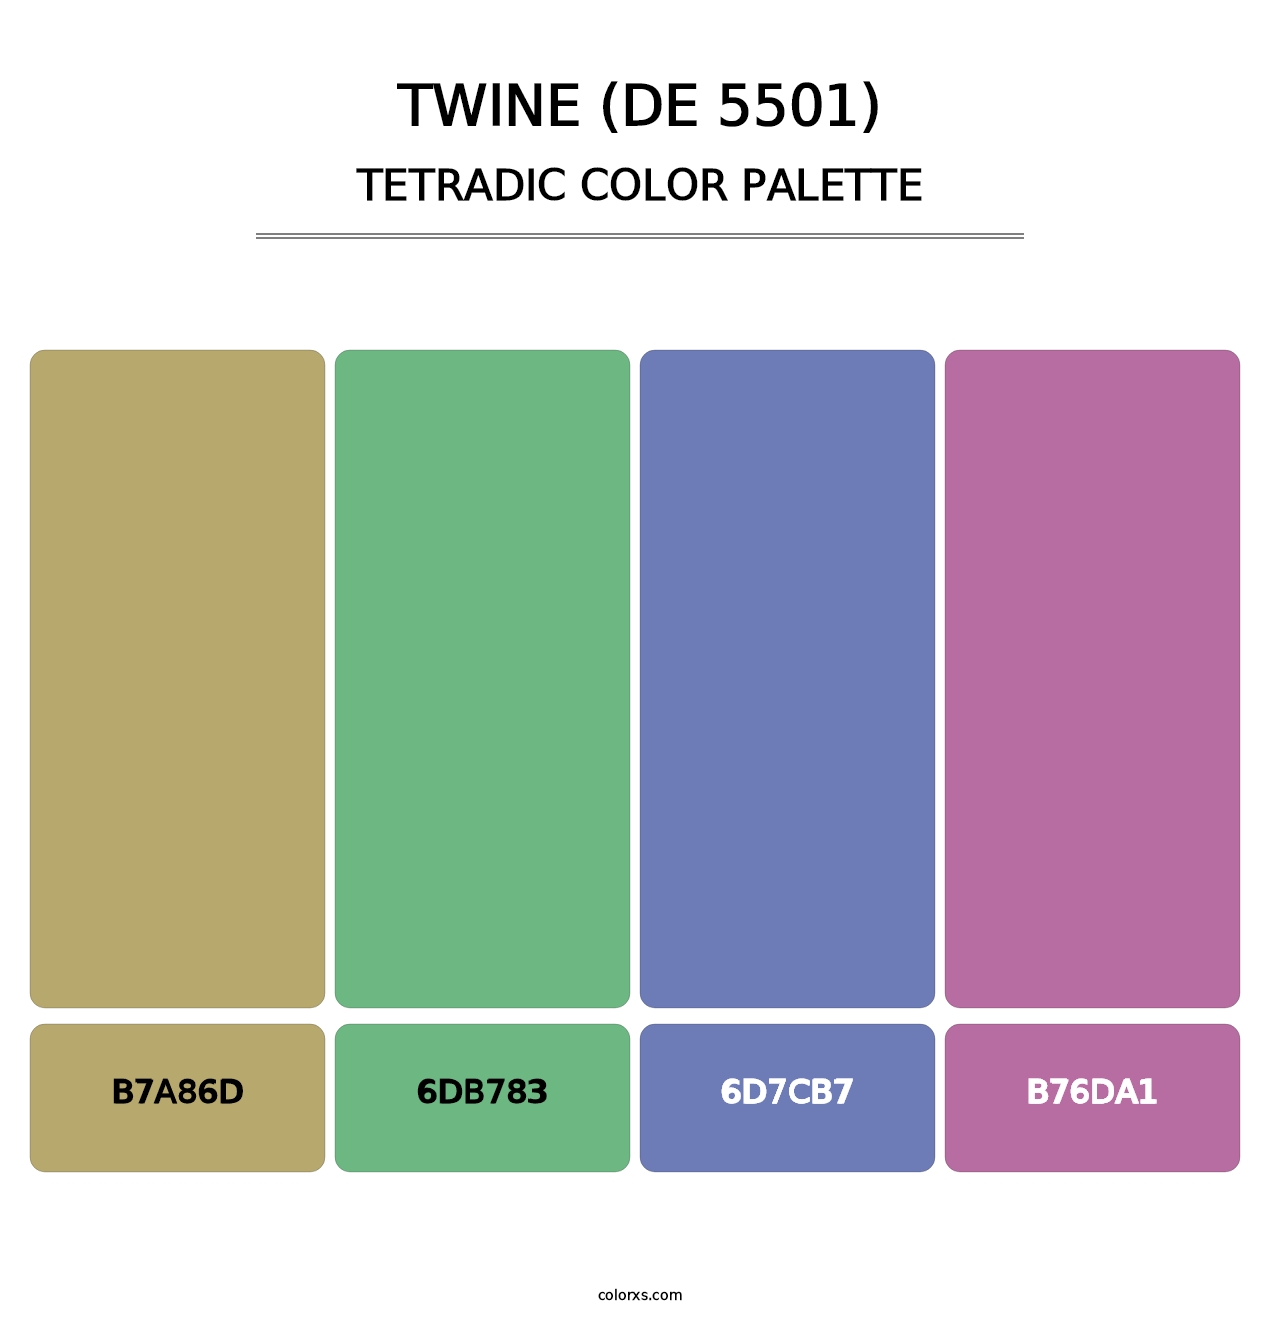 Twine (DE 5501) - Tetradic Color Palette